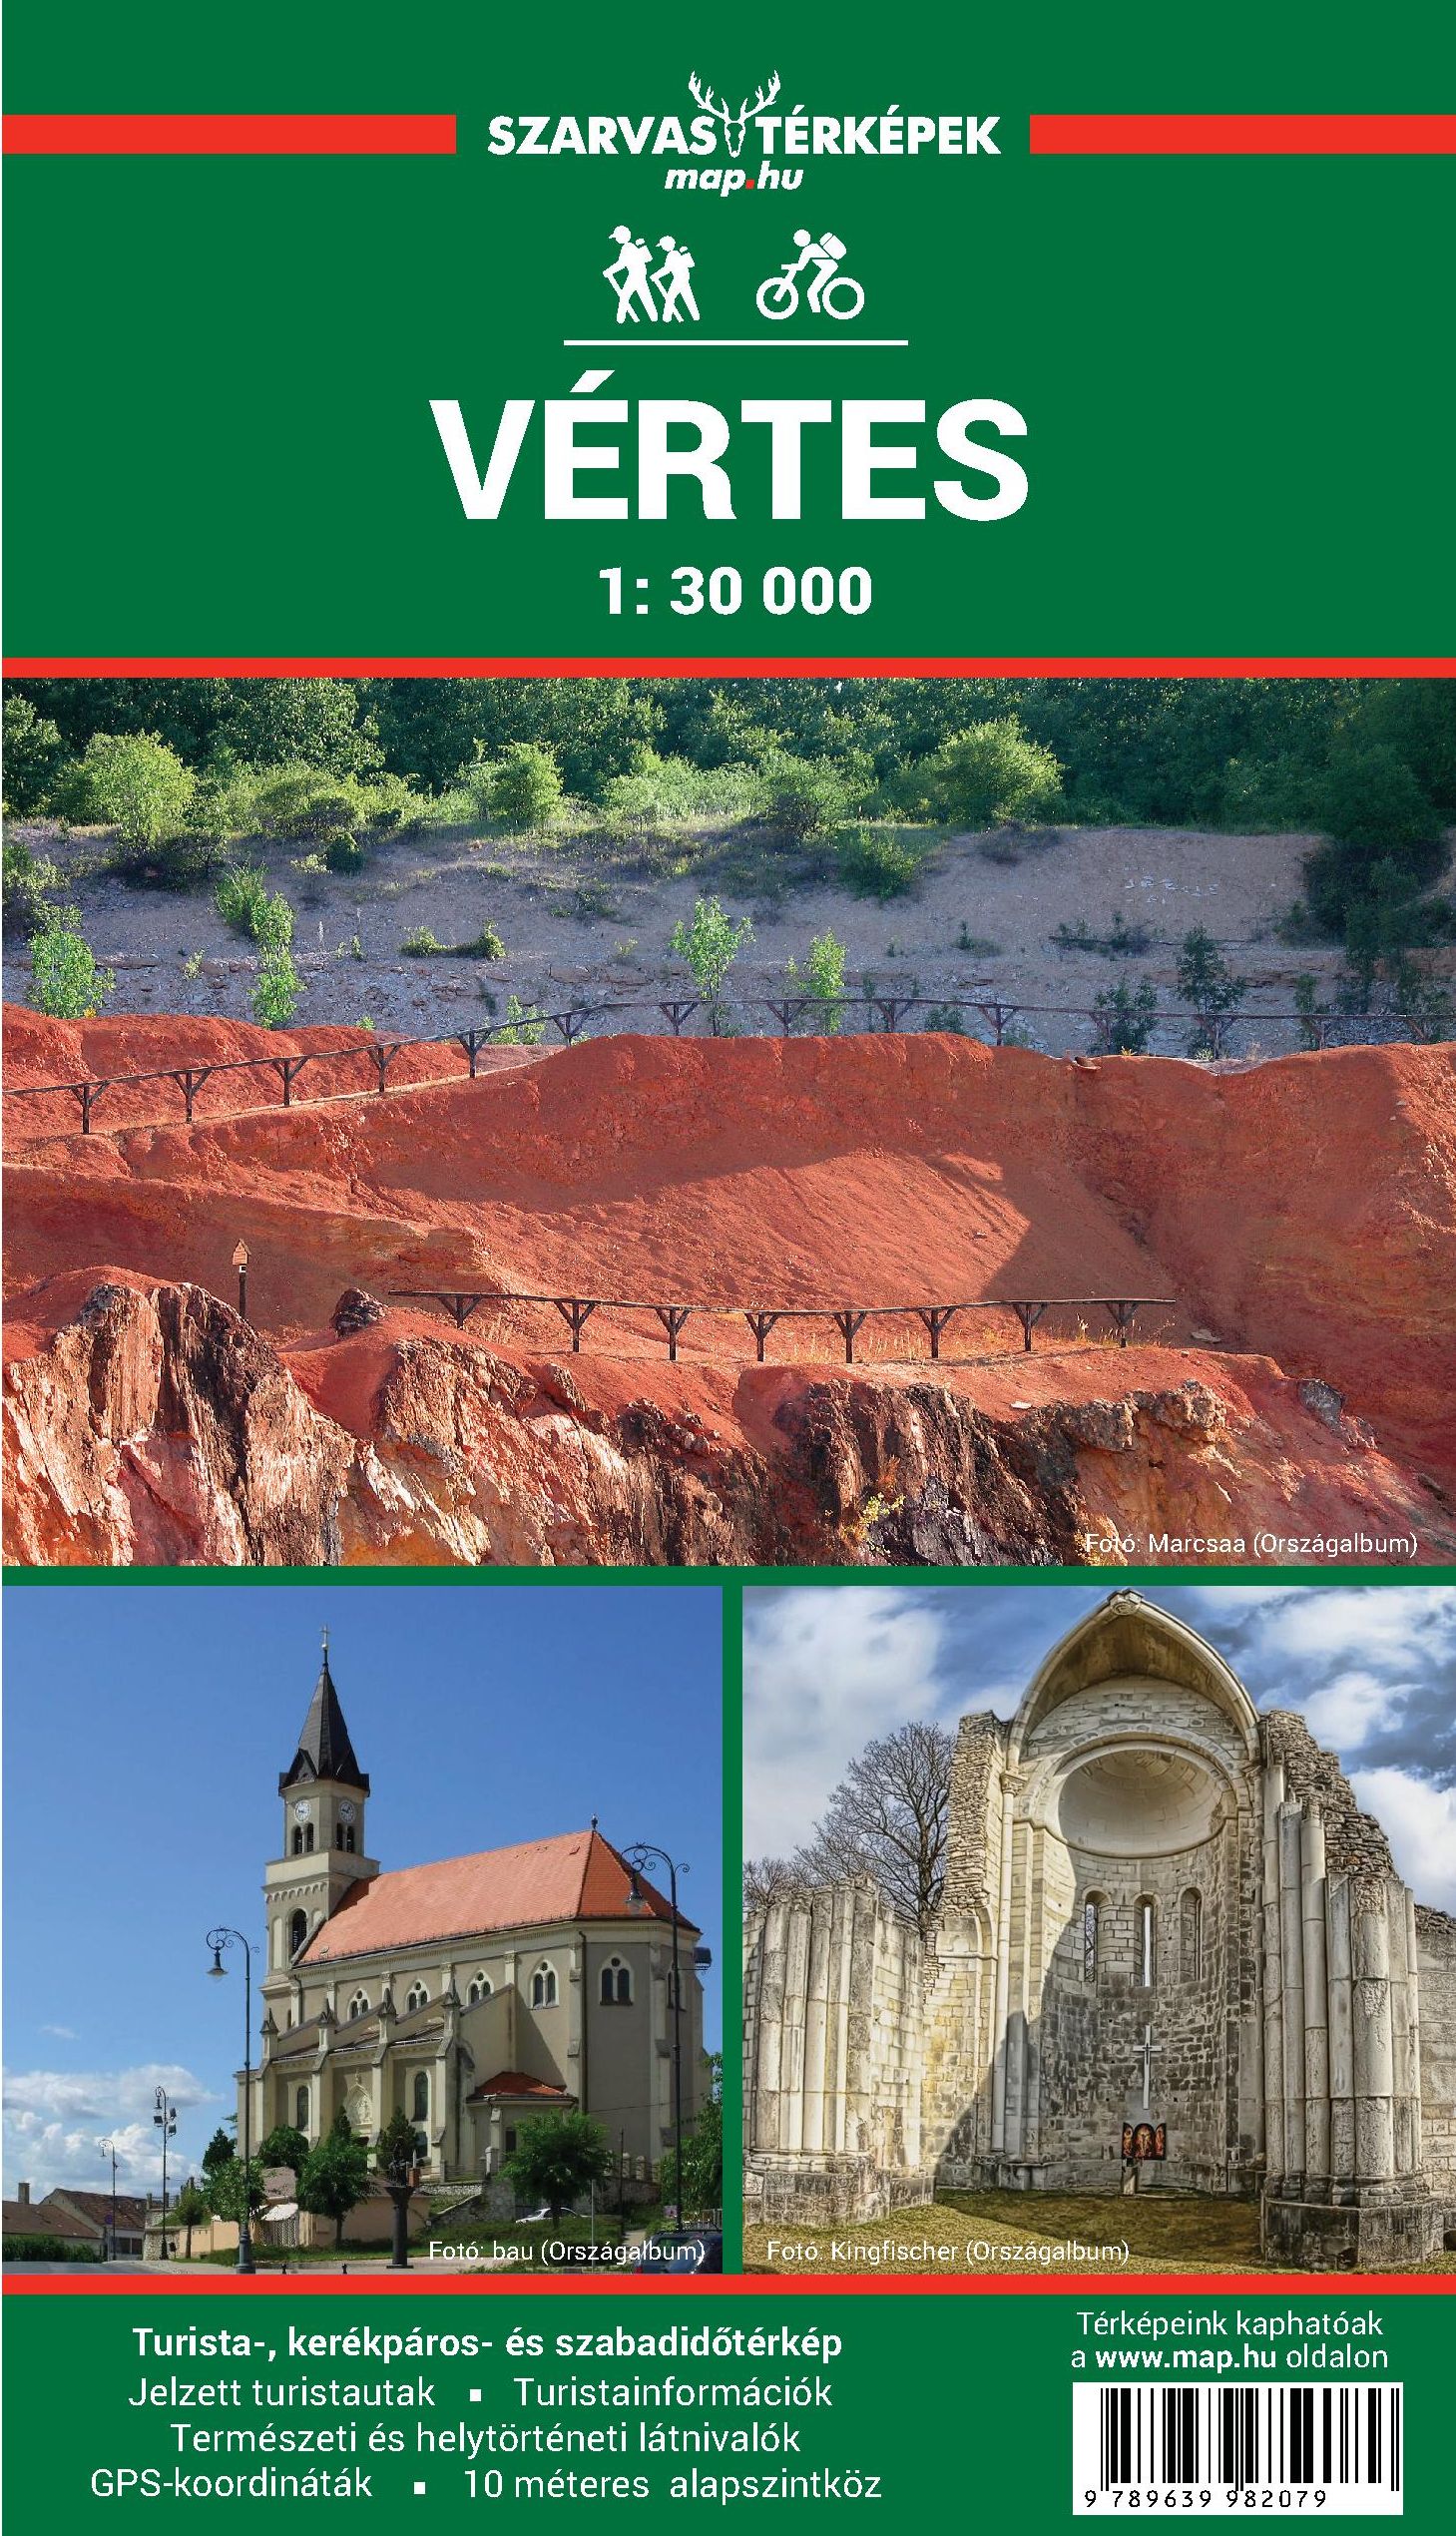 Inset maps: Oroszlány, Mór, Csákvár 1.15.000